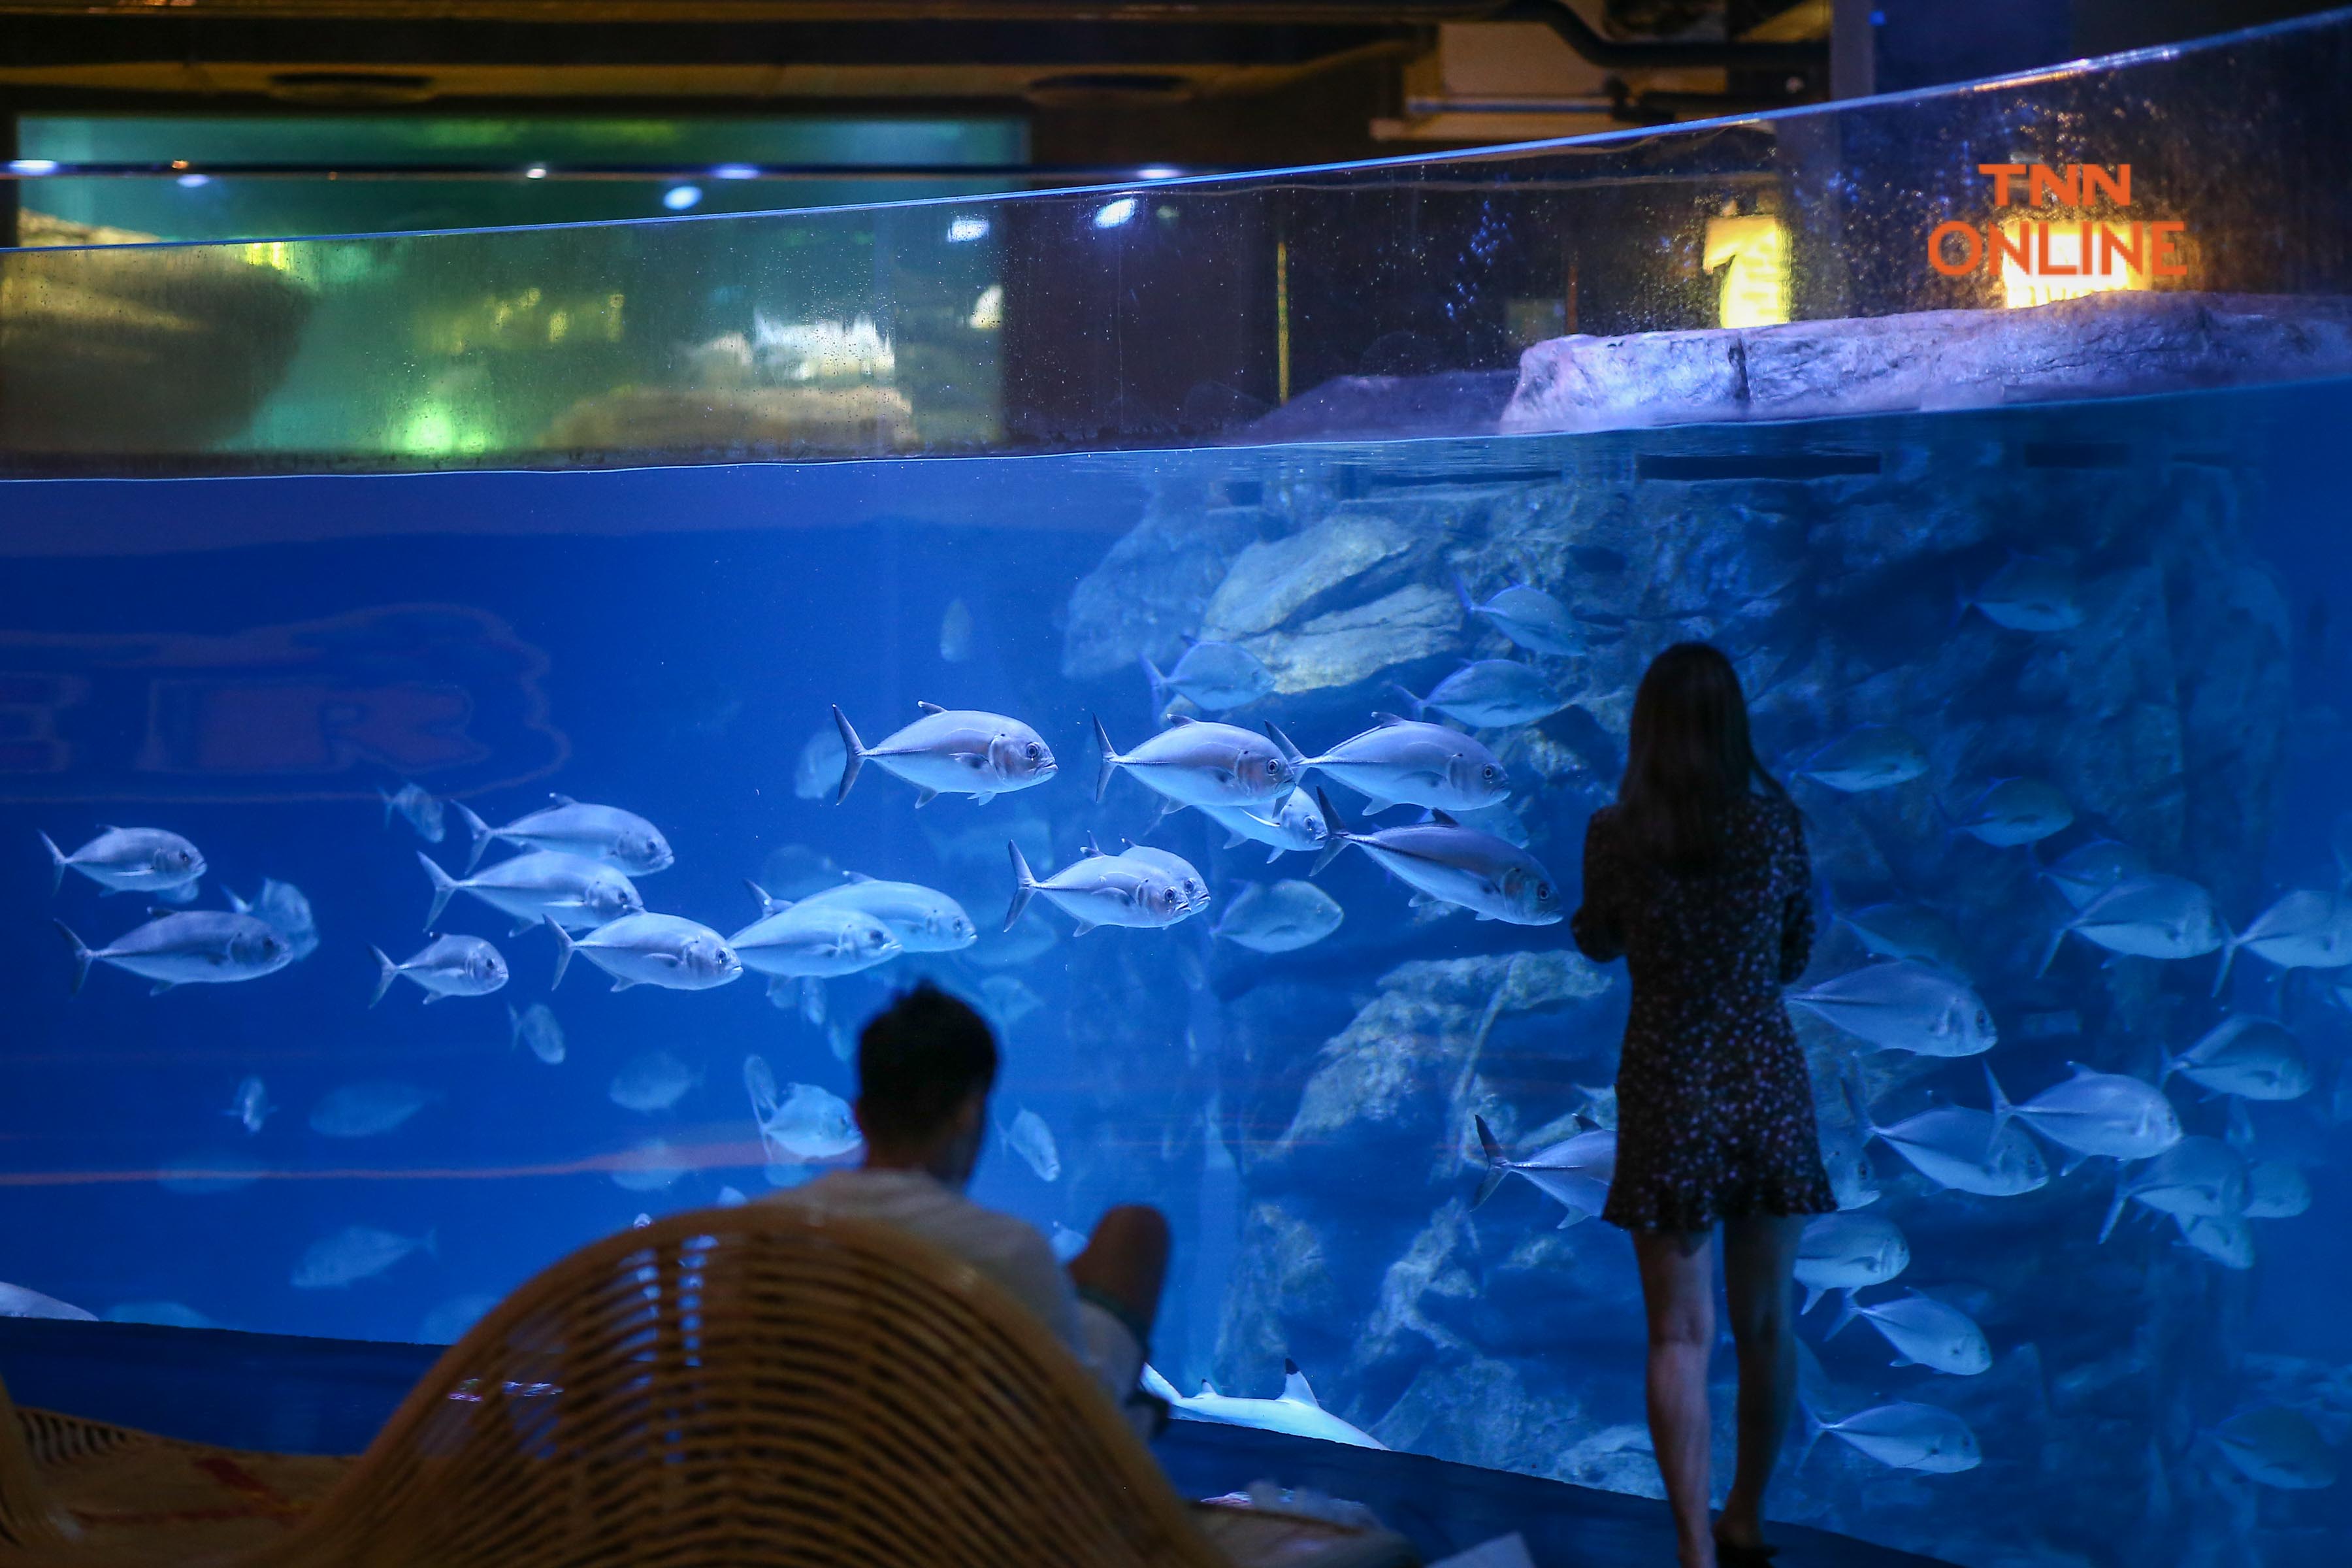 ชวนเที่ยว Aquaria Phuket ร่วมสัมผัสชีวิตฝูงปลานานาพันธ์ุพร้อมดำดิ่งสู่โลกใต้ทะเล